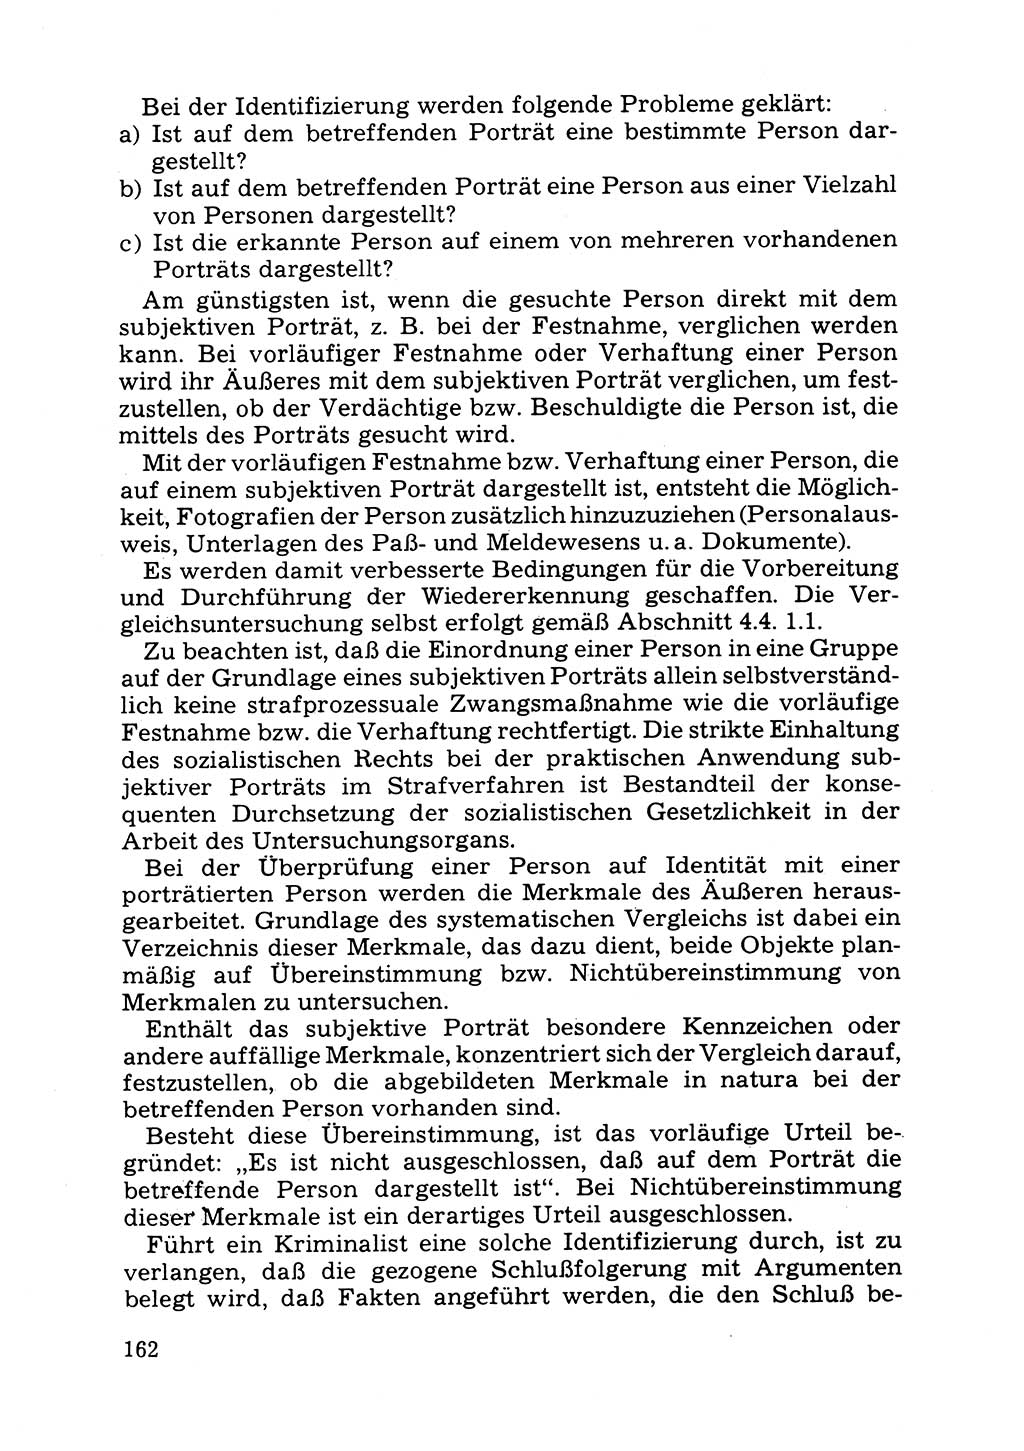 Das subjektive Porträt [Deutsche Demokratische Republik (DDR)] 1981, Seite 162 (Subj. Port. DDR 1981, S. 162)